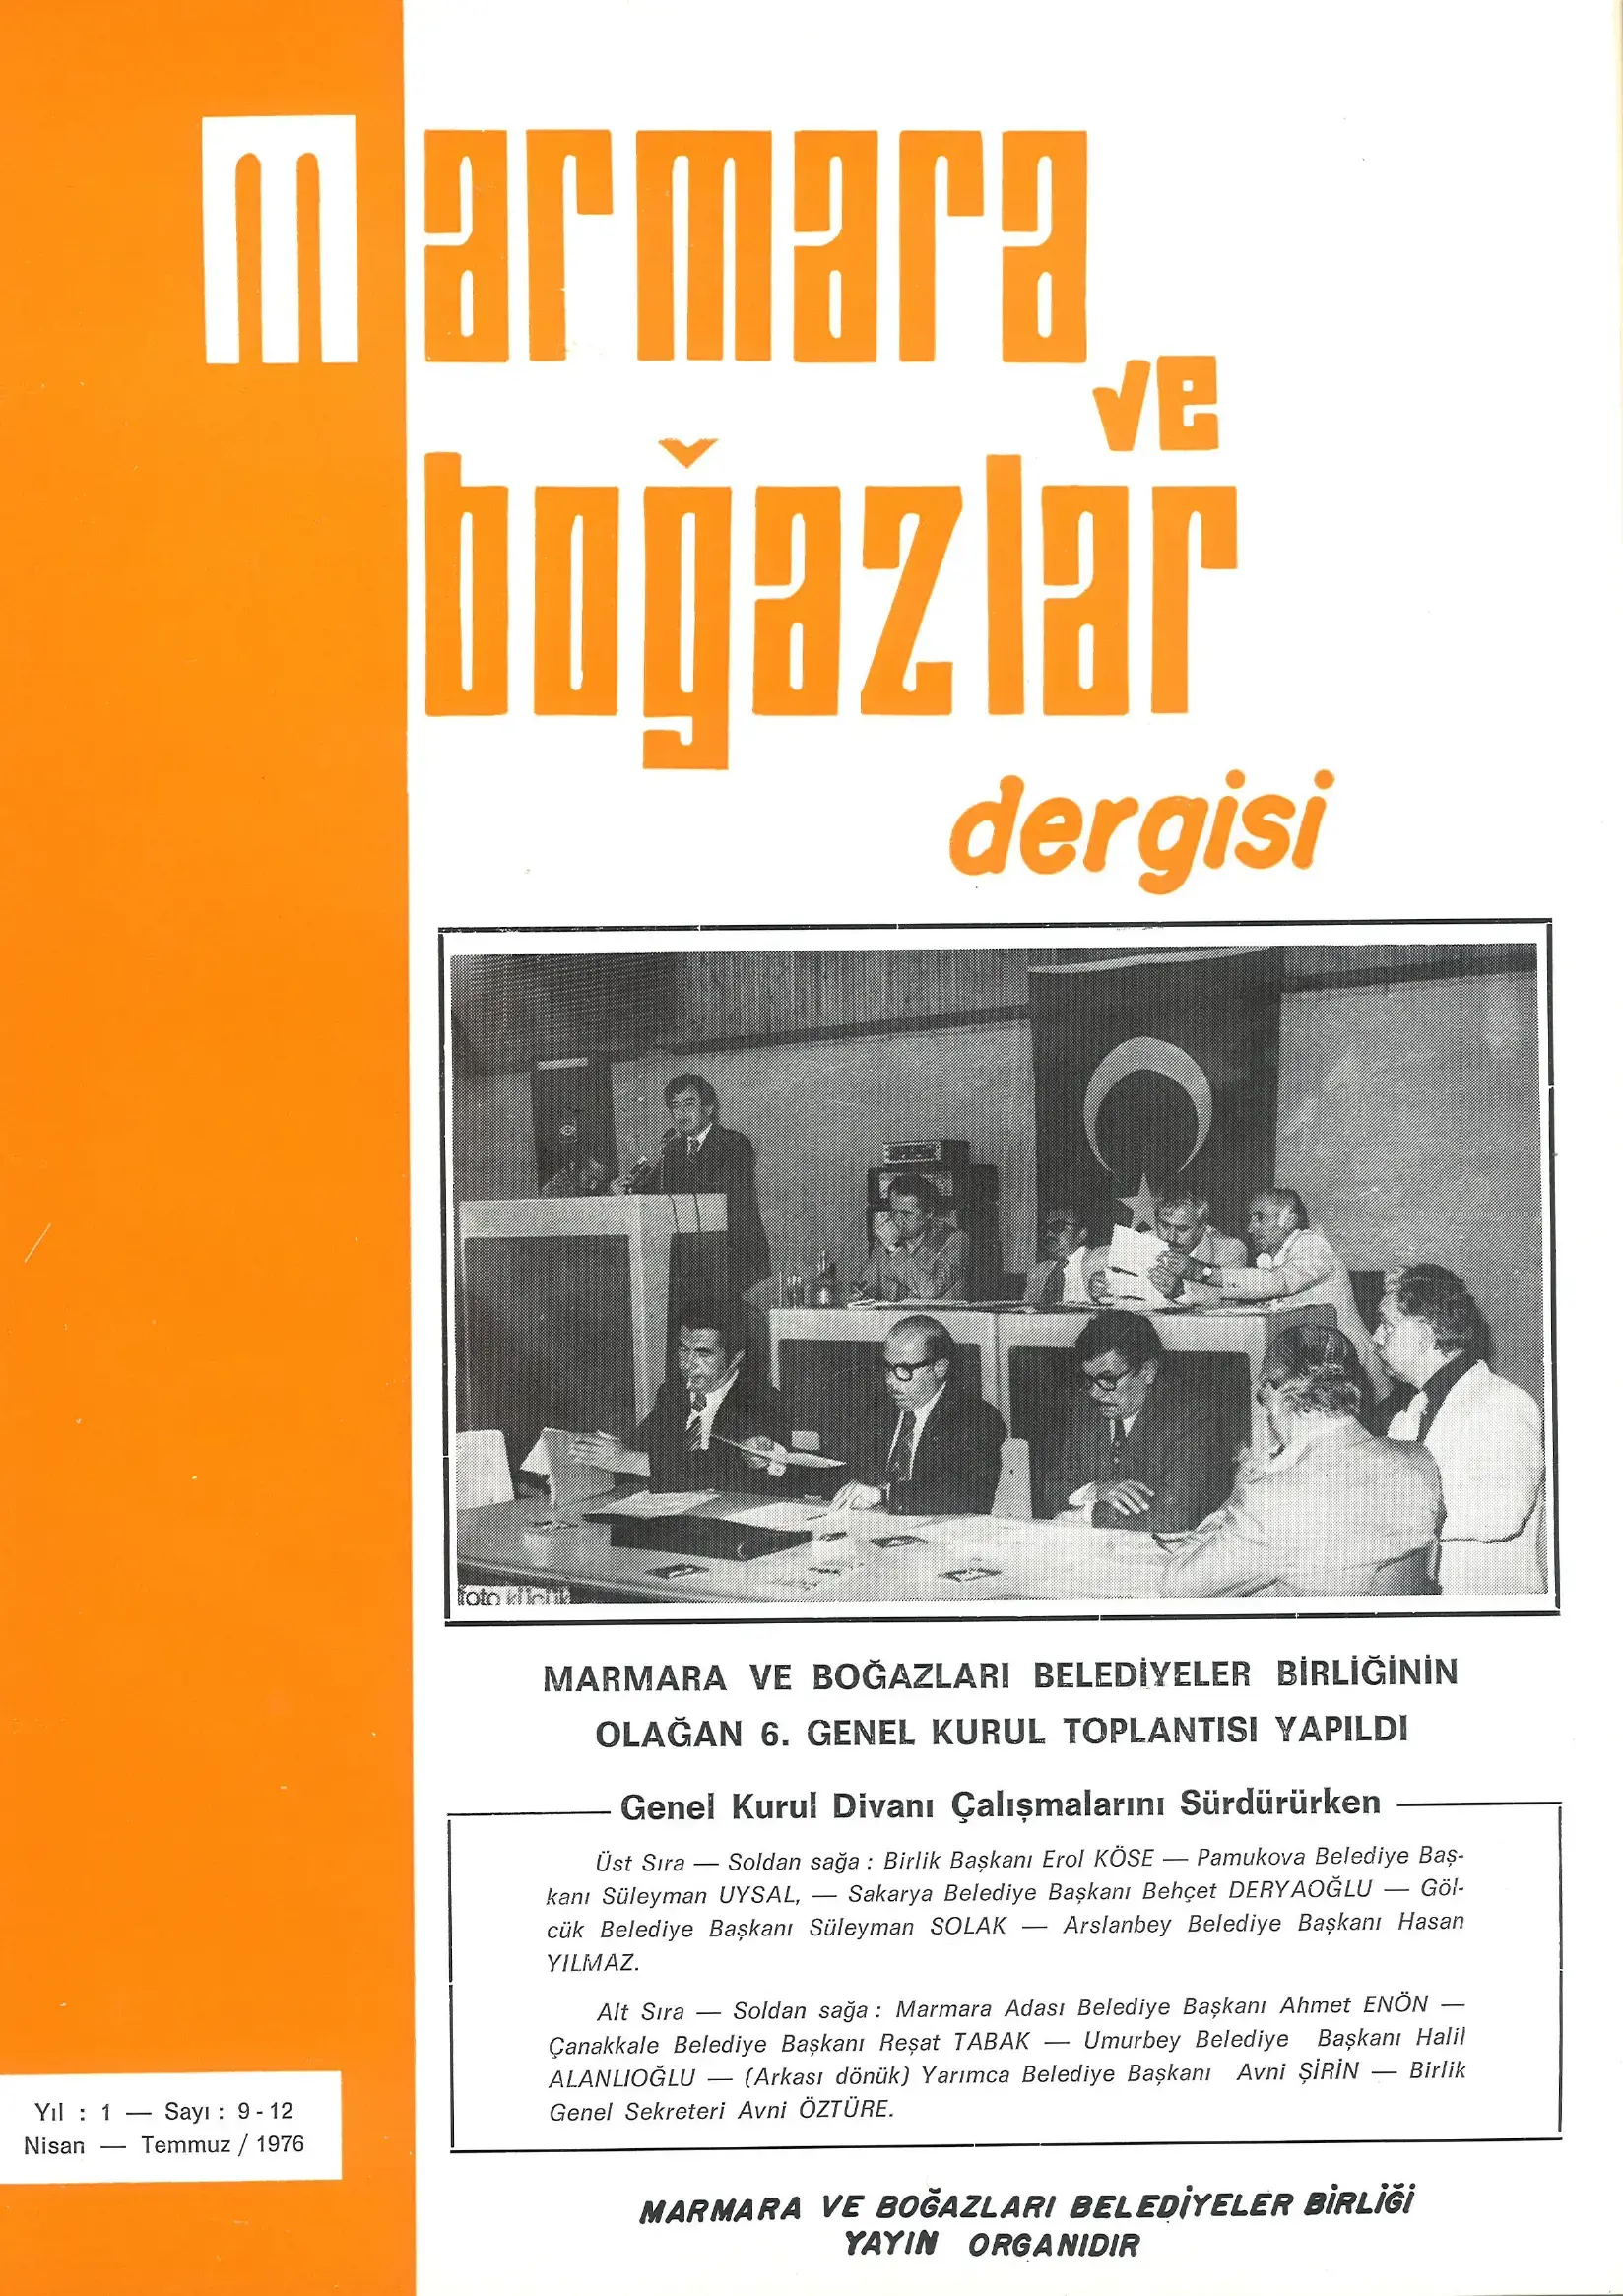 Marmara ve Boğazlar Dergisi - Nisan-Temmuz 1976
                        Resmi